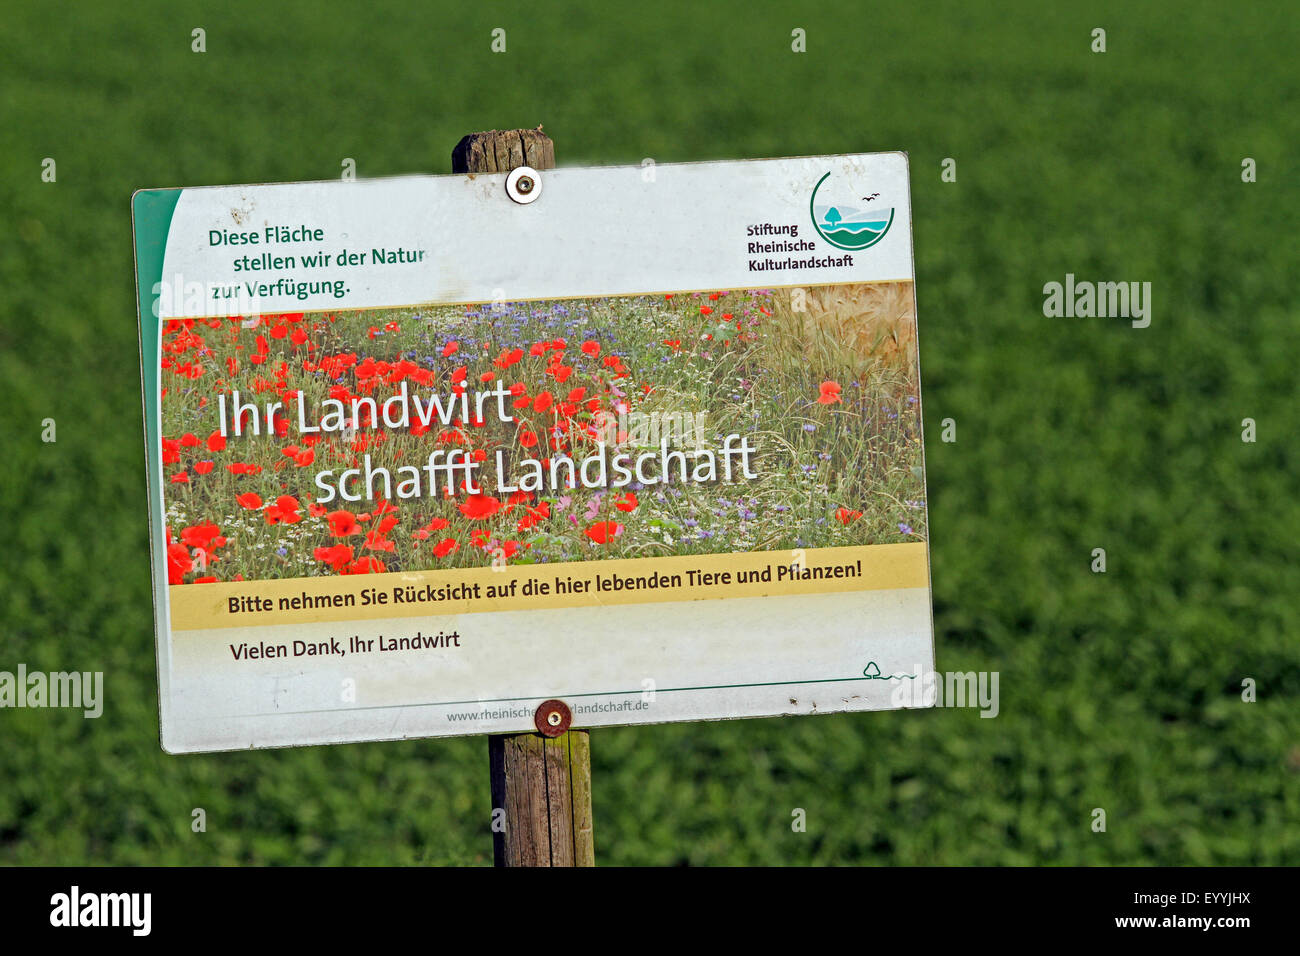 Señal denominada 'RSI Landwirt schafft paisaje' en frente de tierras agrícolas no utilizadas, Alemania Foto de stock